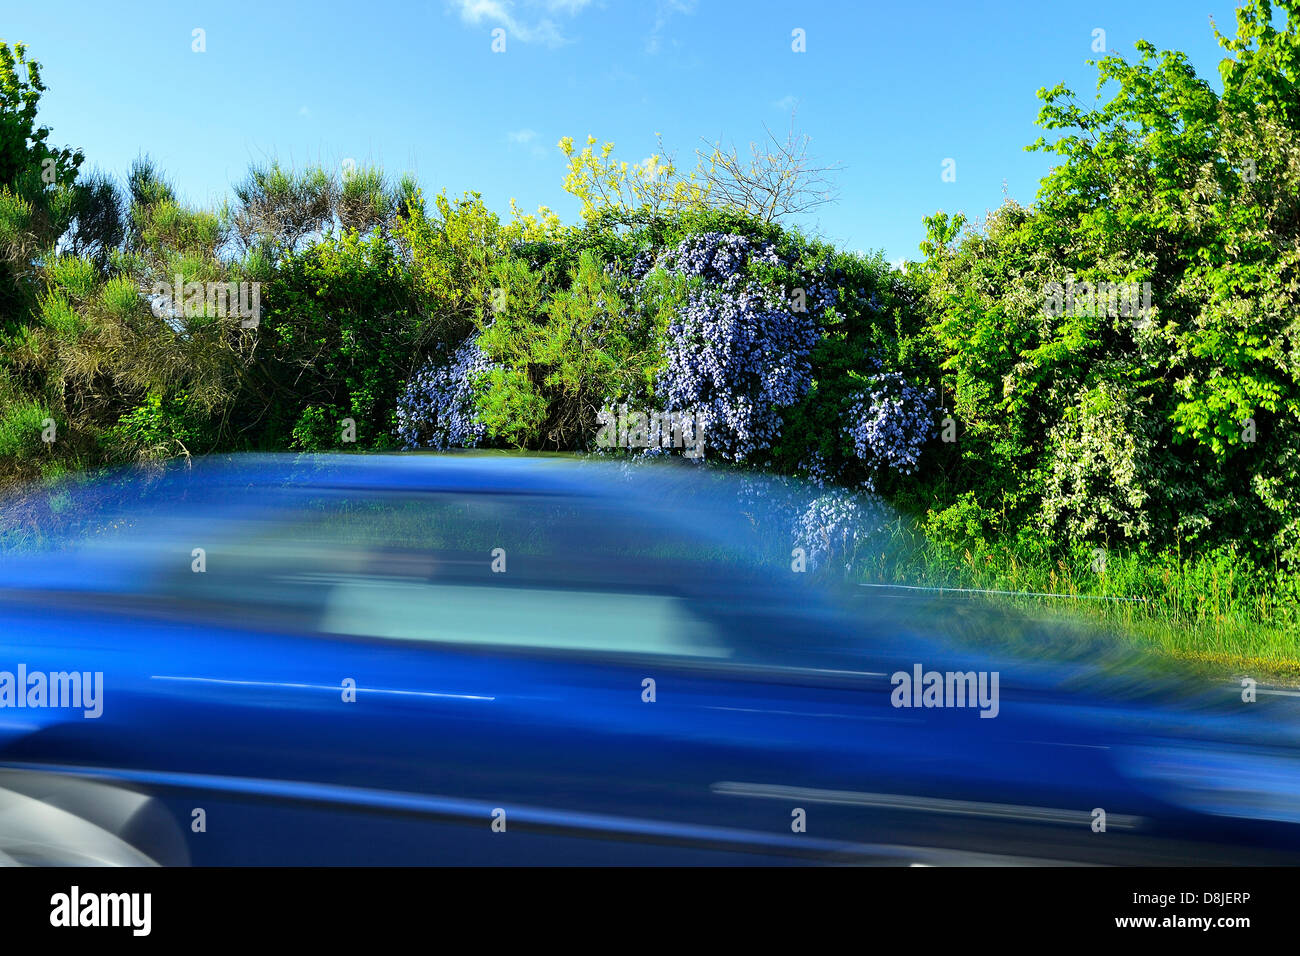 Voiture bleue sur une route voiture bleue sur une route avec le flou, route bordée d'une haie d'arbustes à fleurs bleues. Banque D'Images